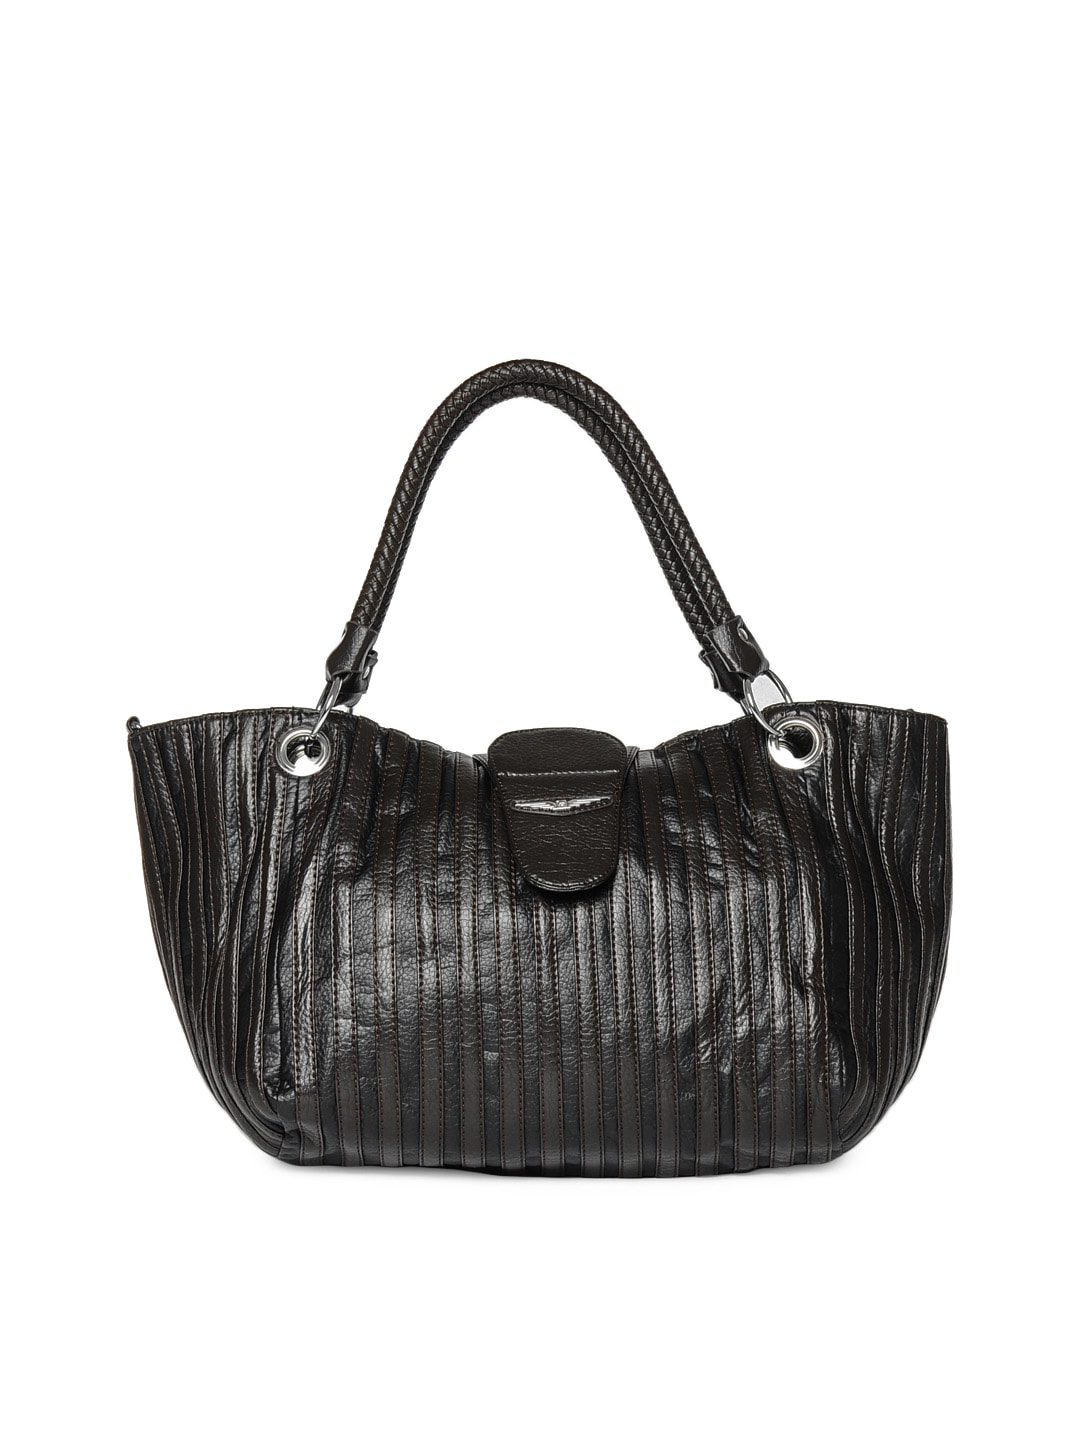 Lino Perros Women Black & Brown Handbag